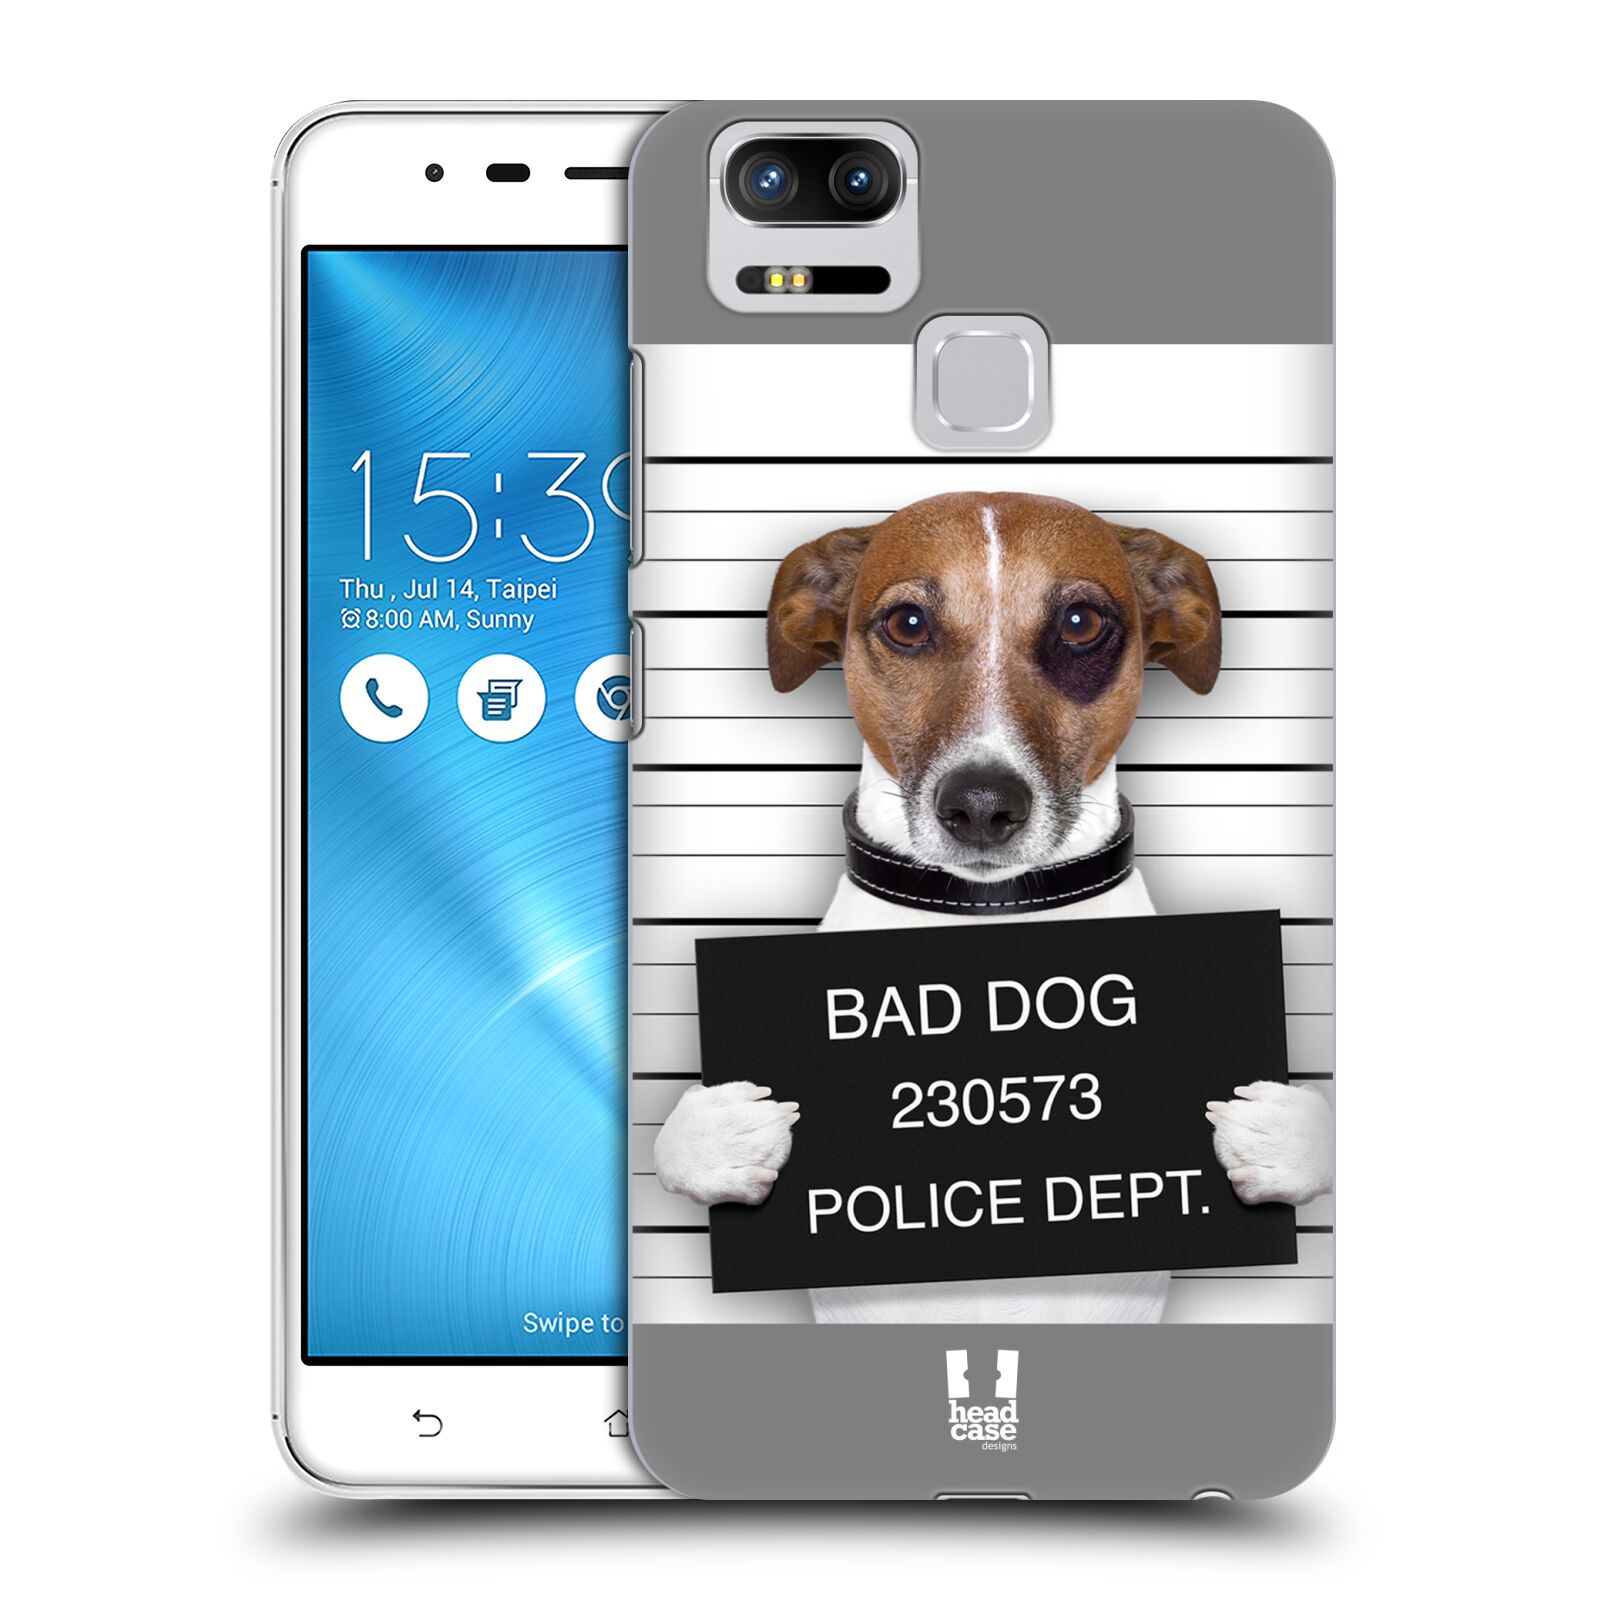 HEAD CASE plastový obal na mobil Asus Zenfone 3 Zoom ZE553KL vzor Legrační zvířátka pejsek na policii